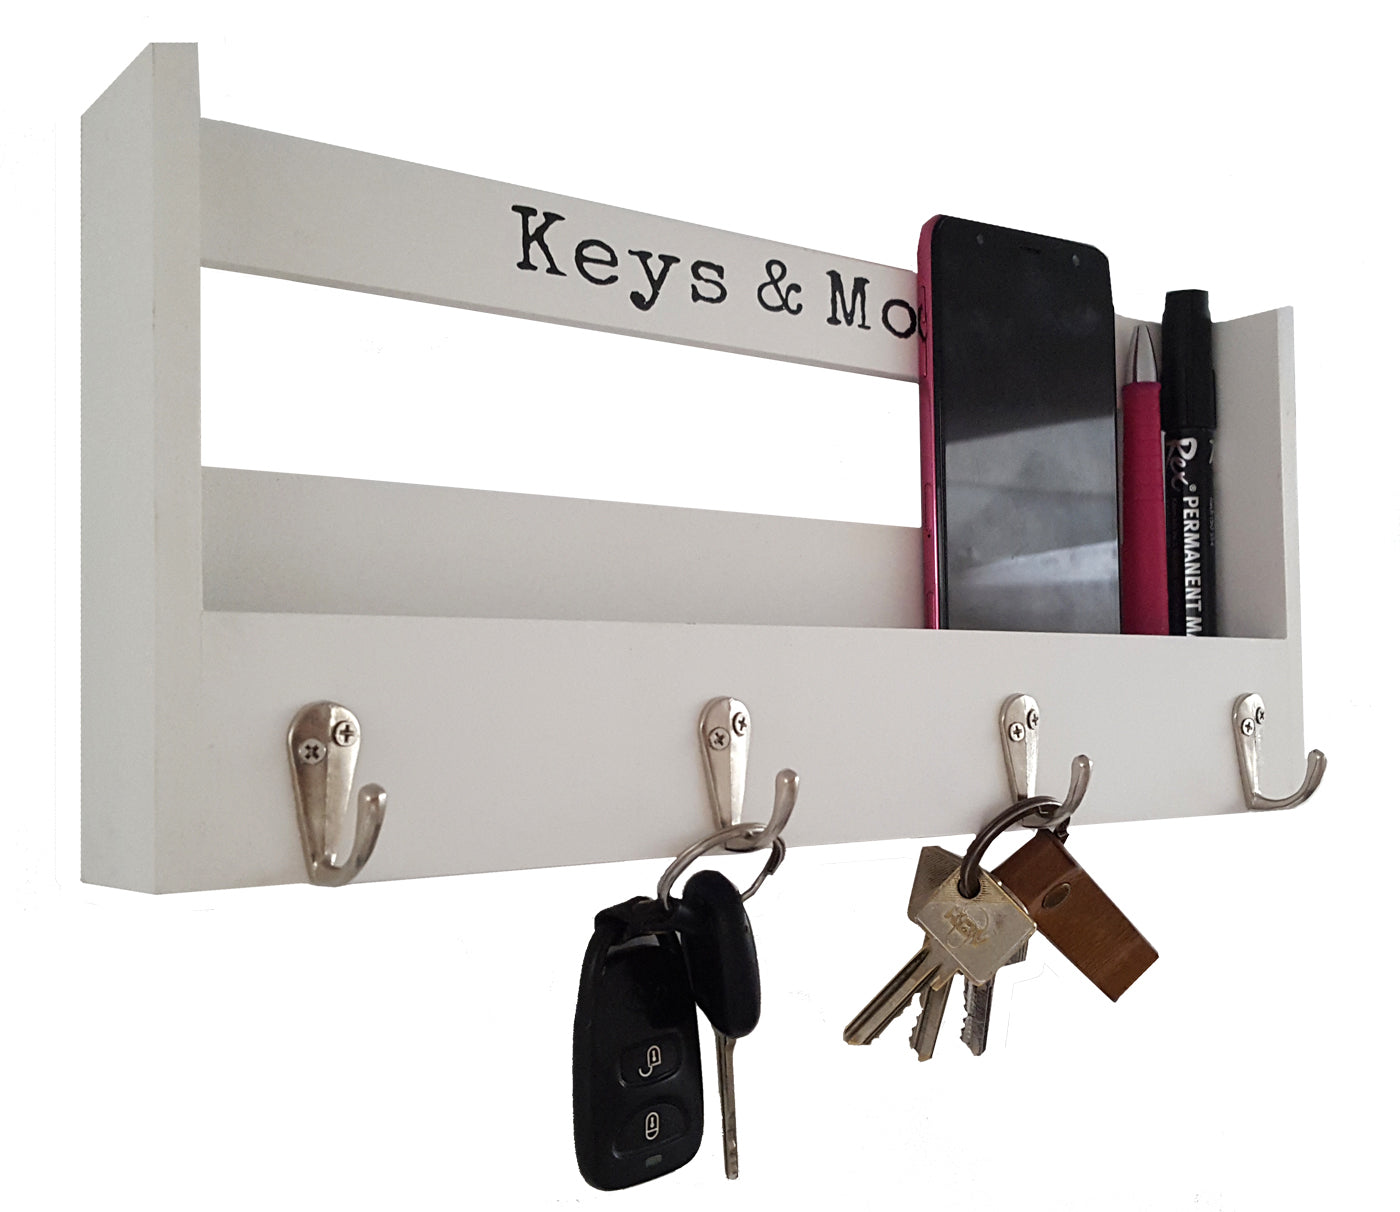 LB H&F Schlüsselkasten Schlüsselschrank Schlüsselbrett mit Ablage